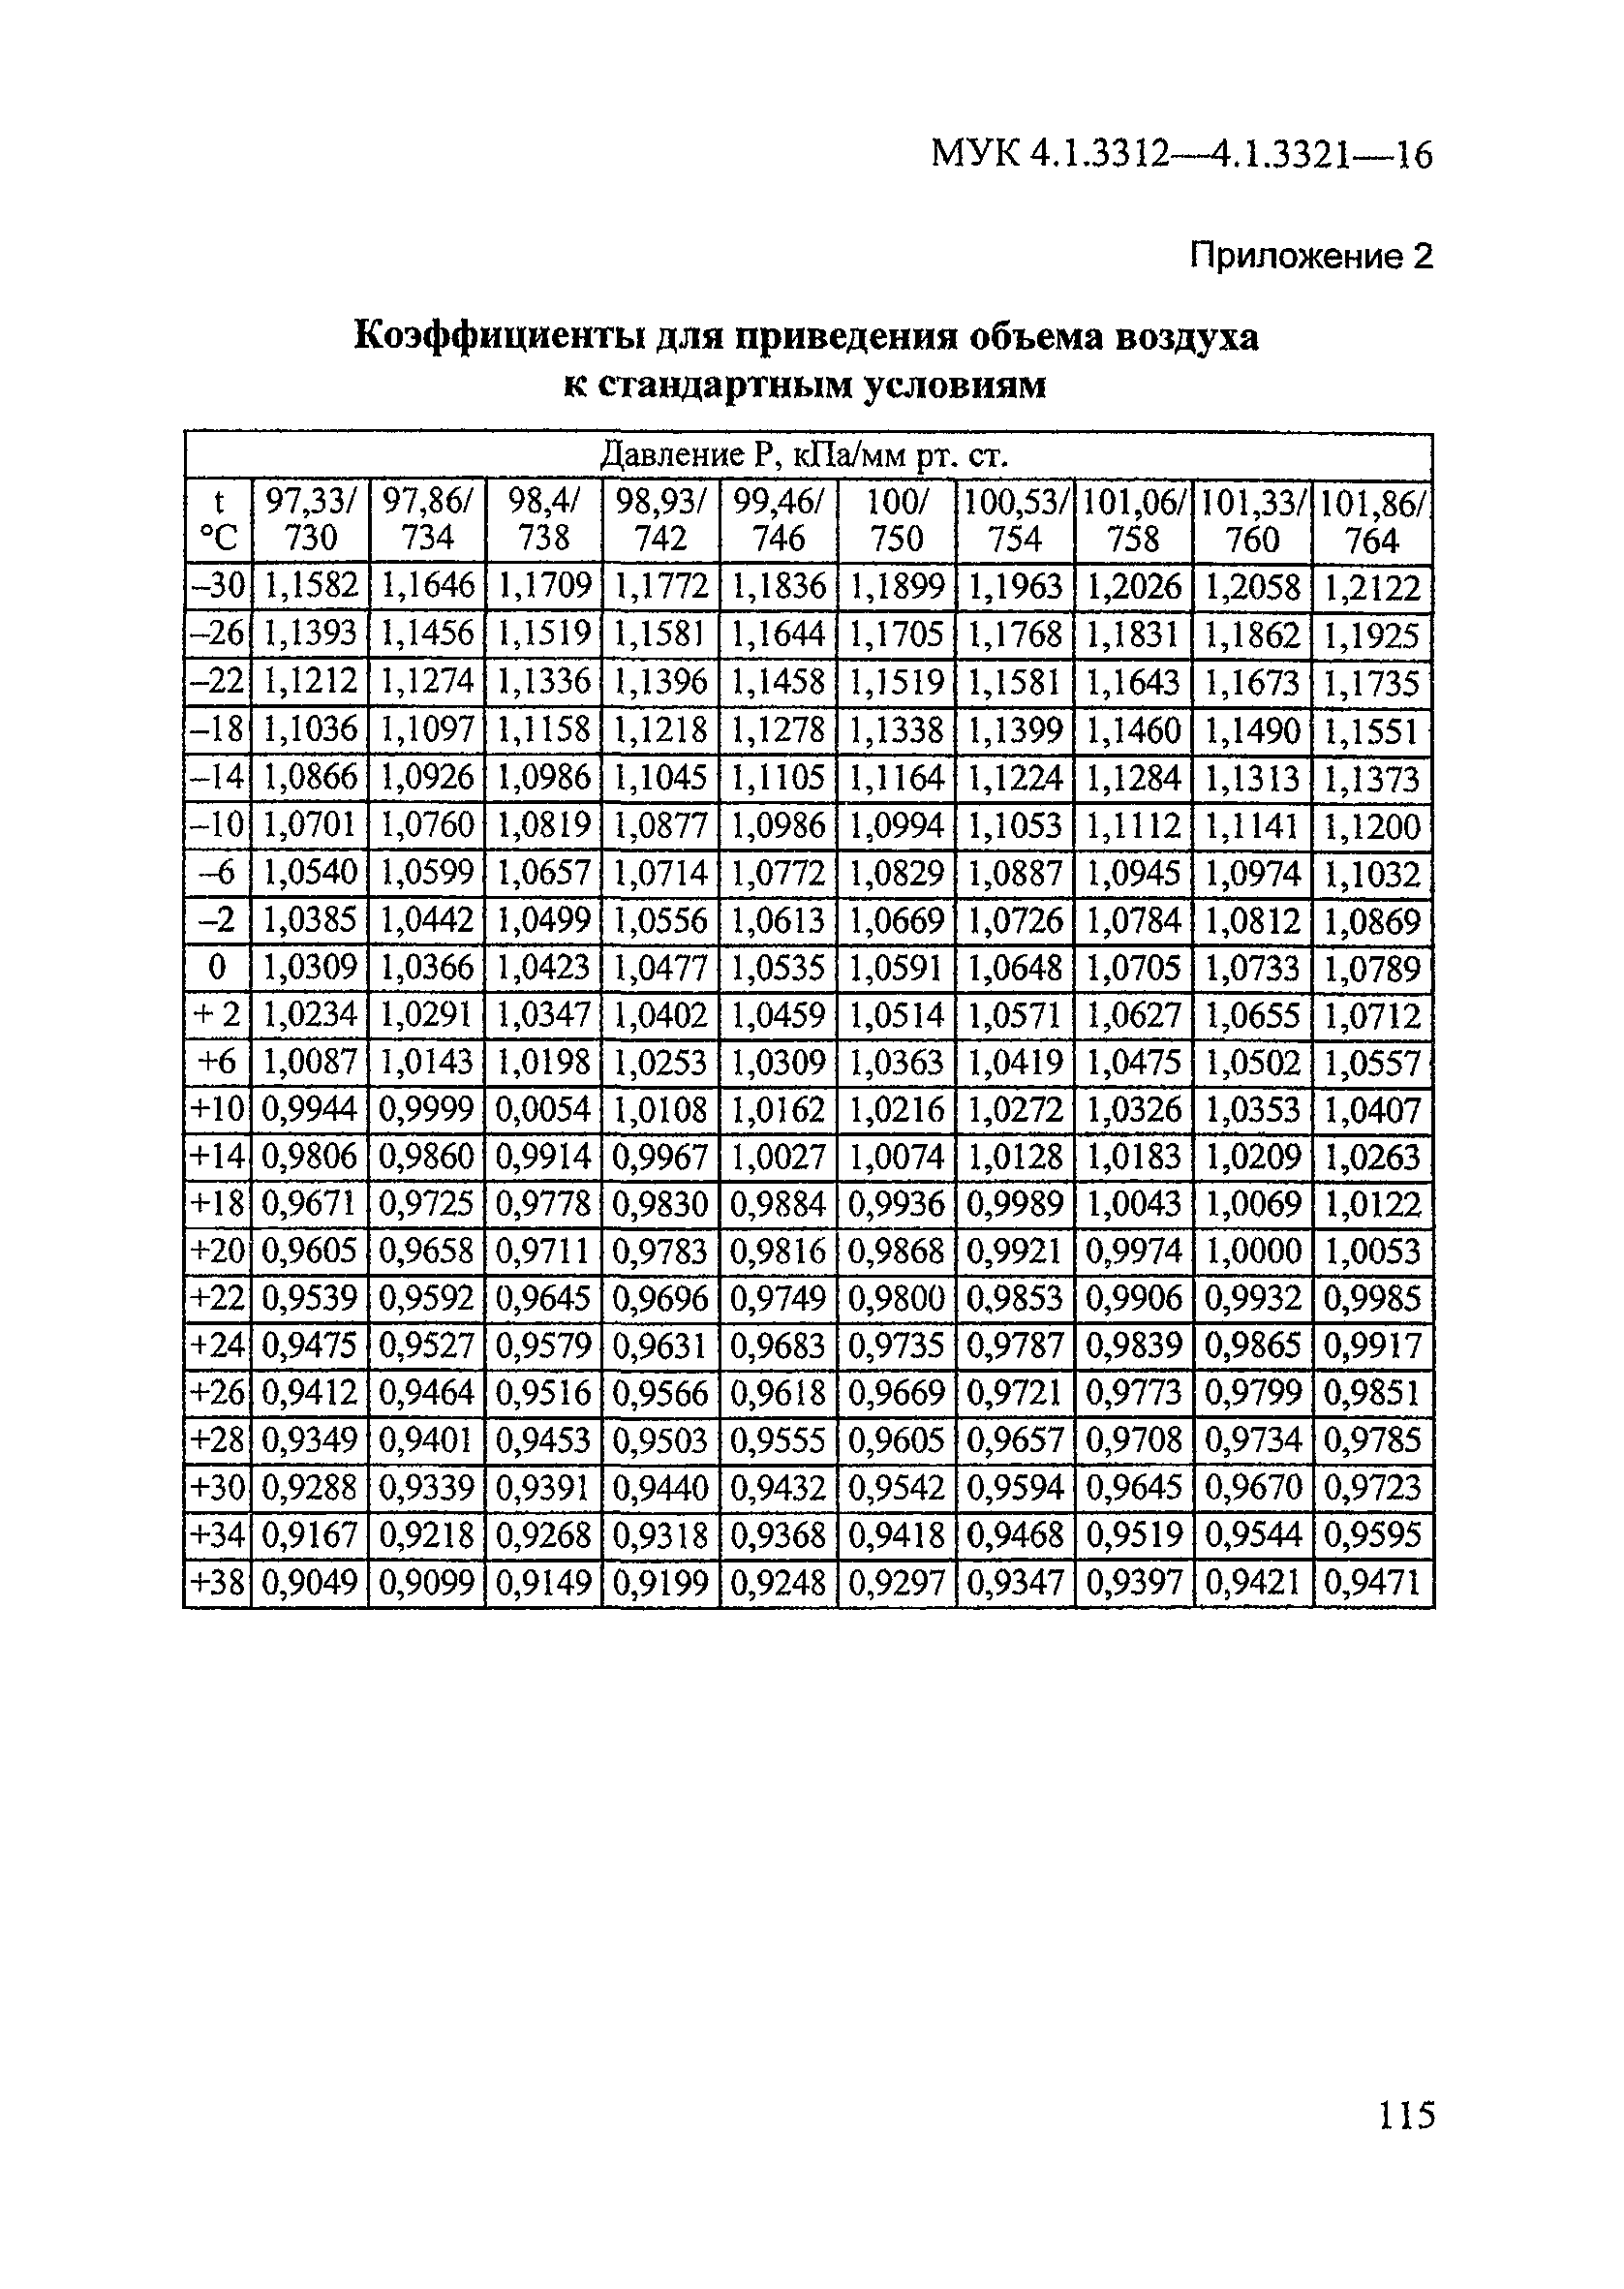 МУК 4.1.3319-15